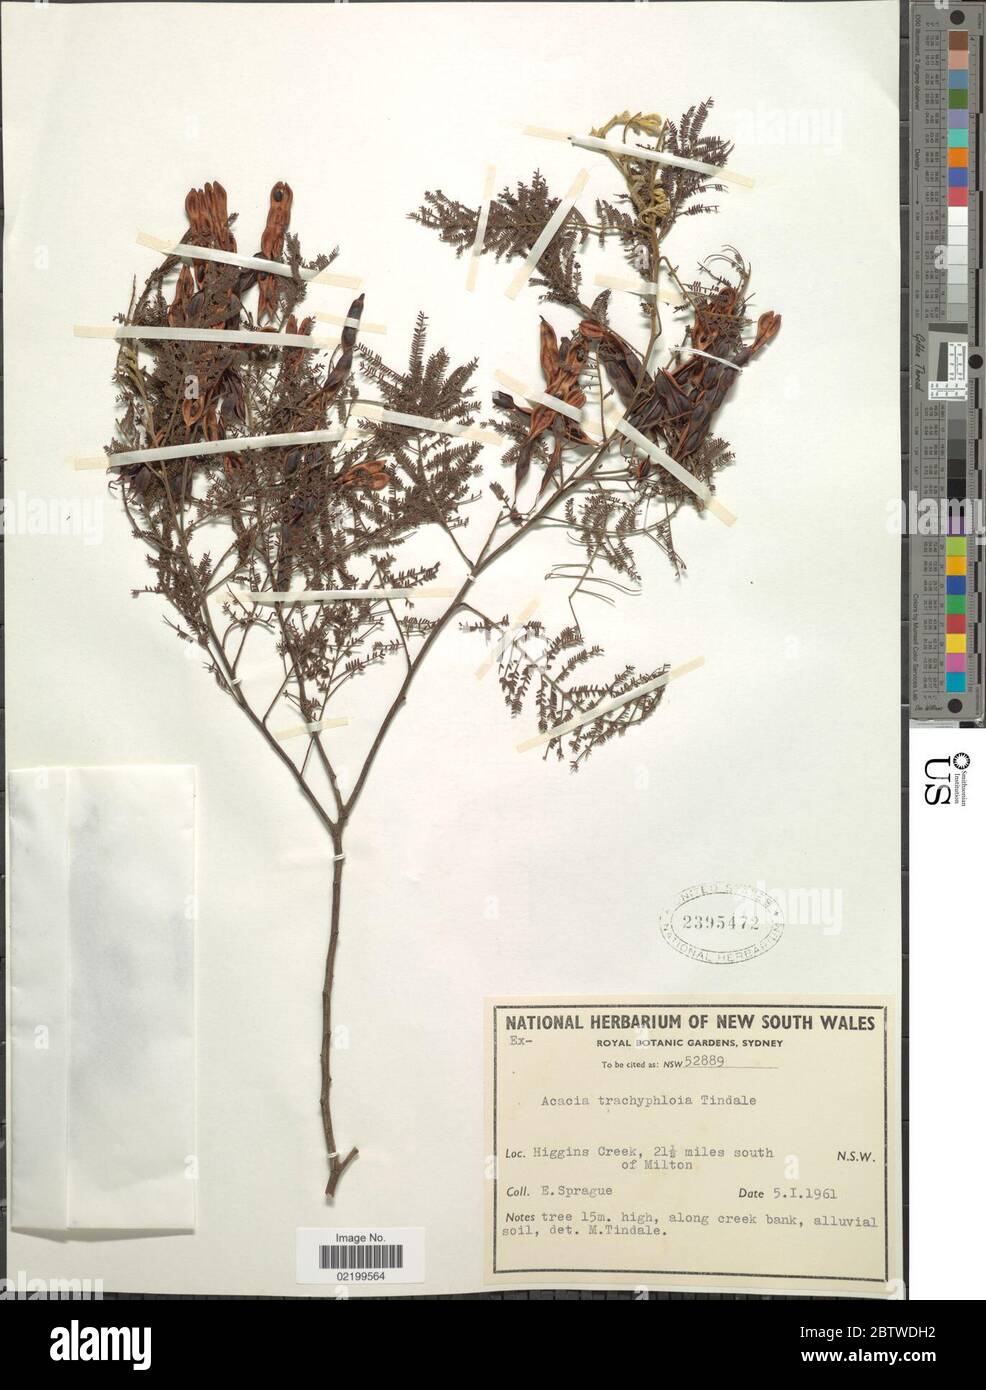 Acacia trachyphloia Tindale. Stock Photo